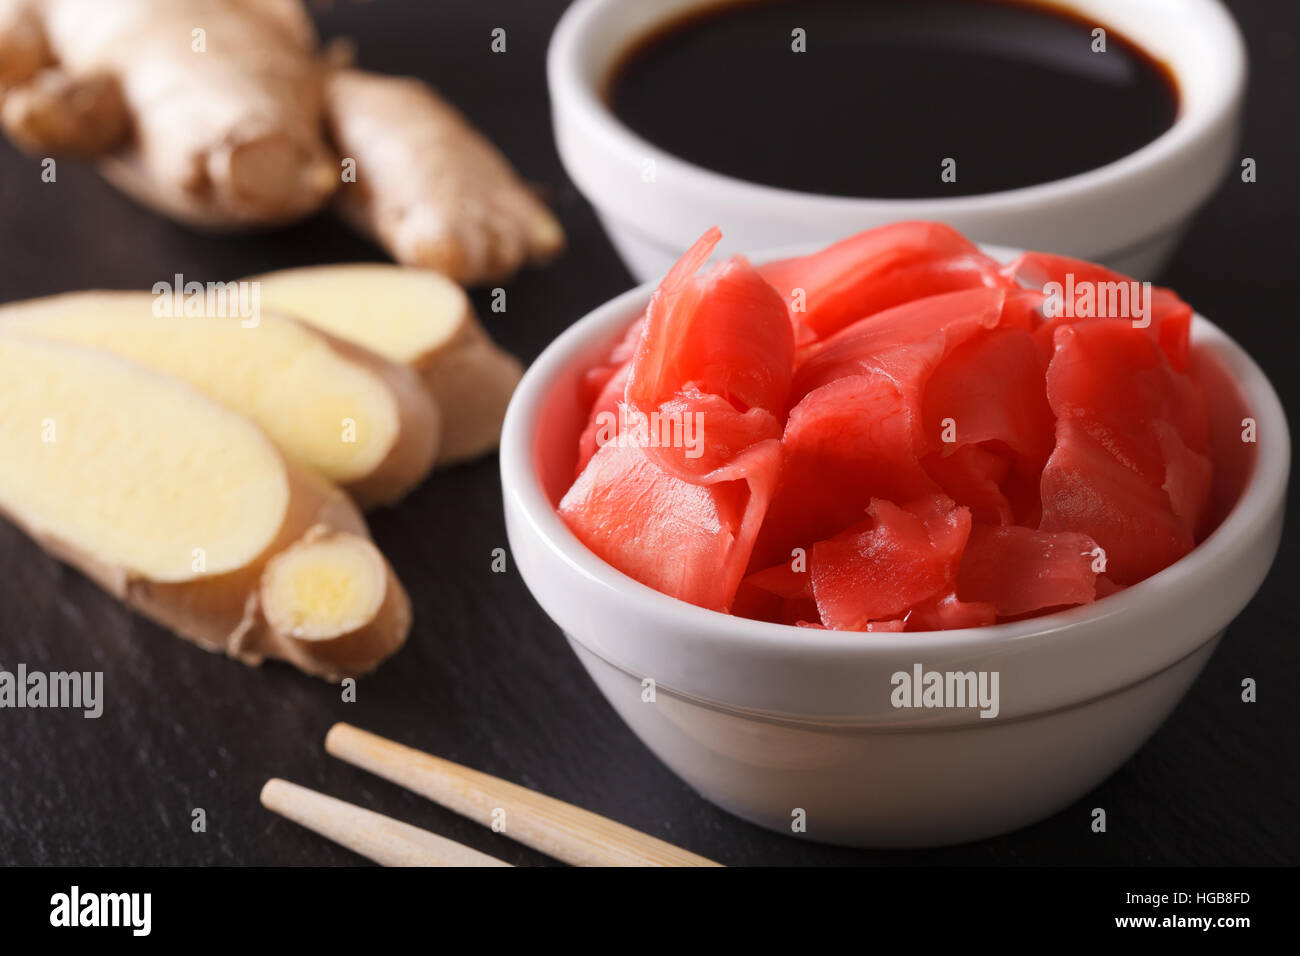 Zenzero sott'aceto e salsa di soia in ciotola macro sul tavolo. Posizione orizzontale Foto Stock